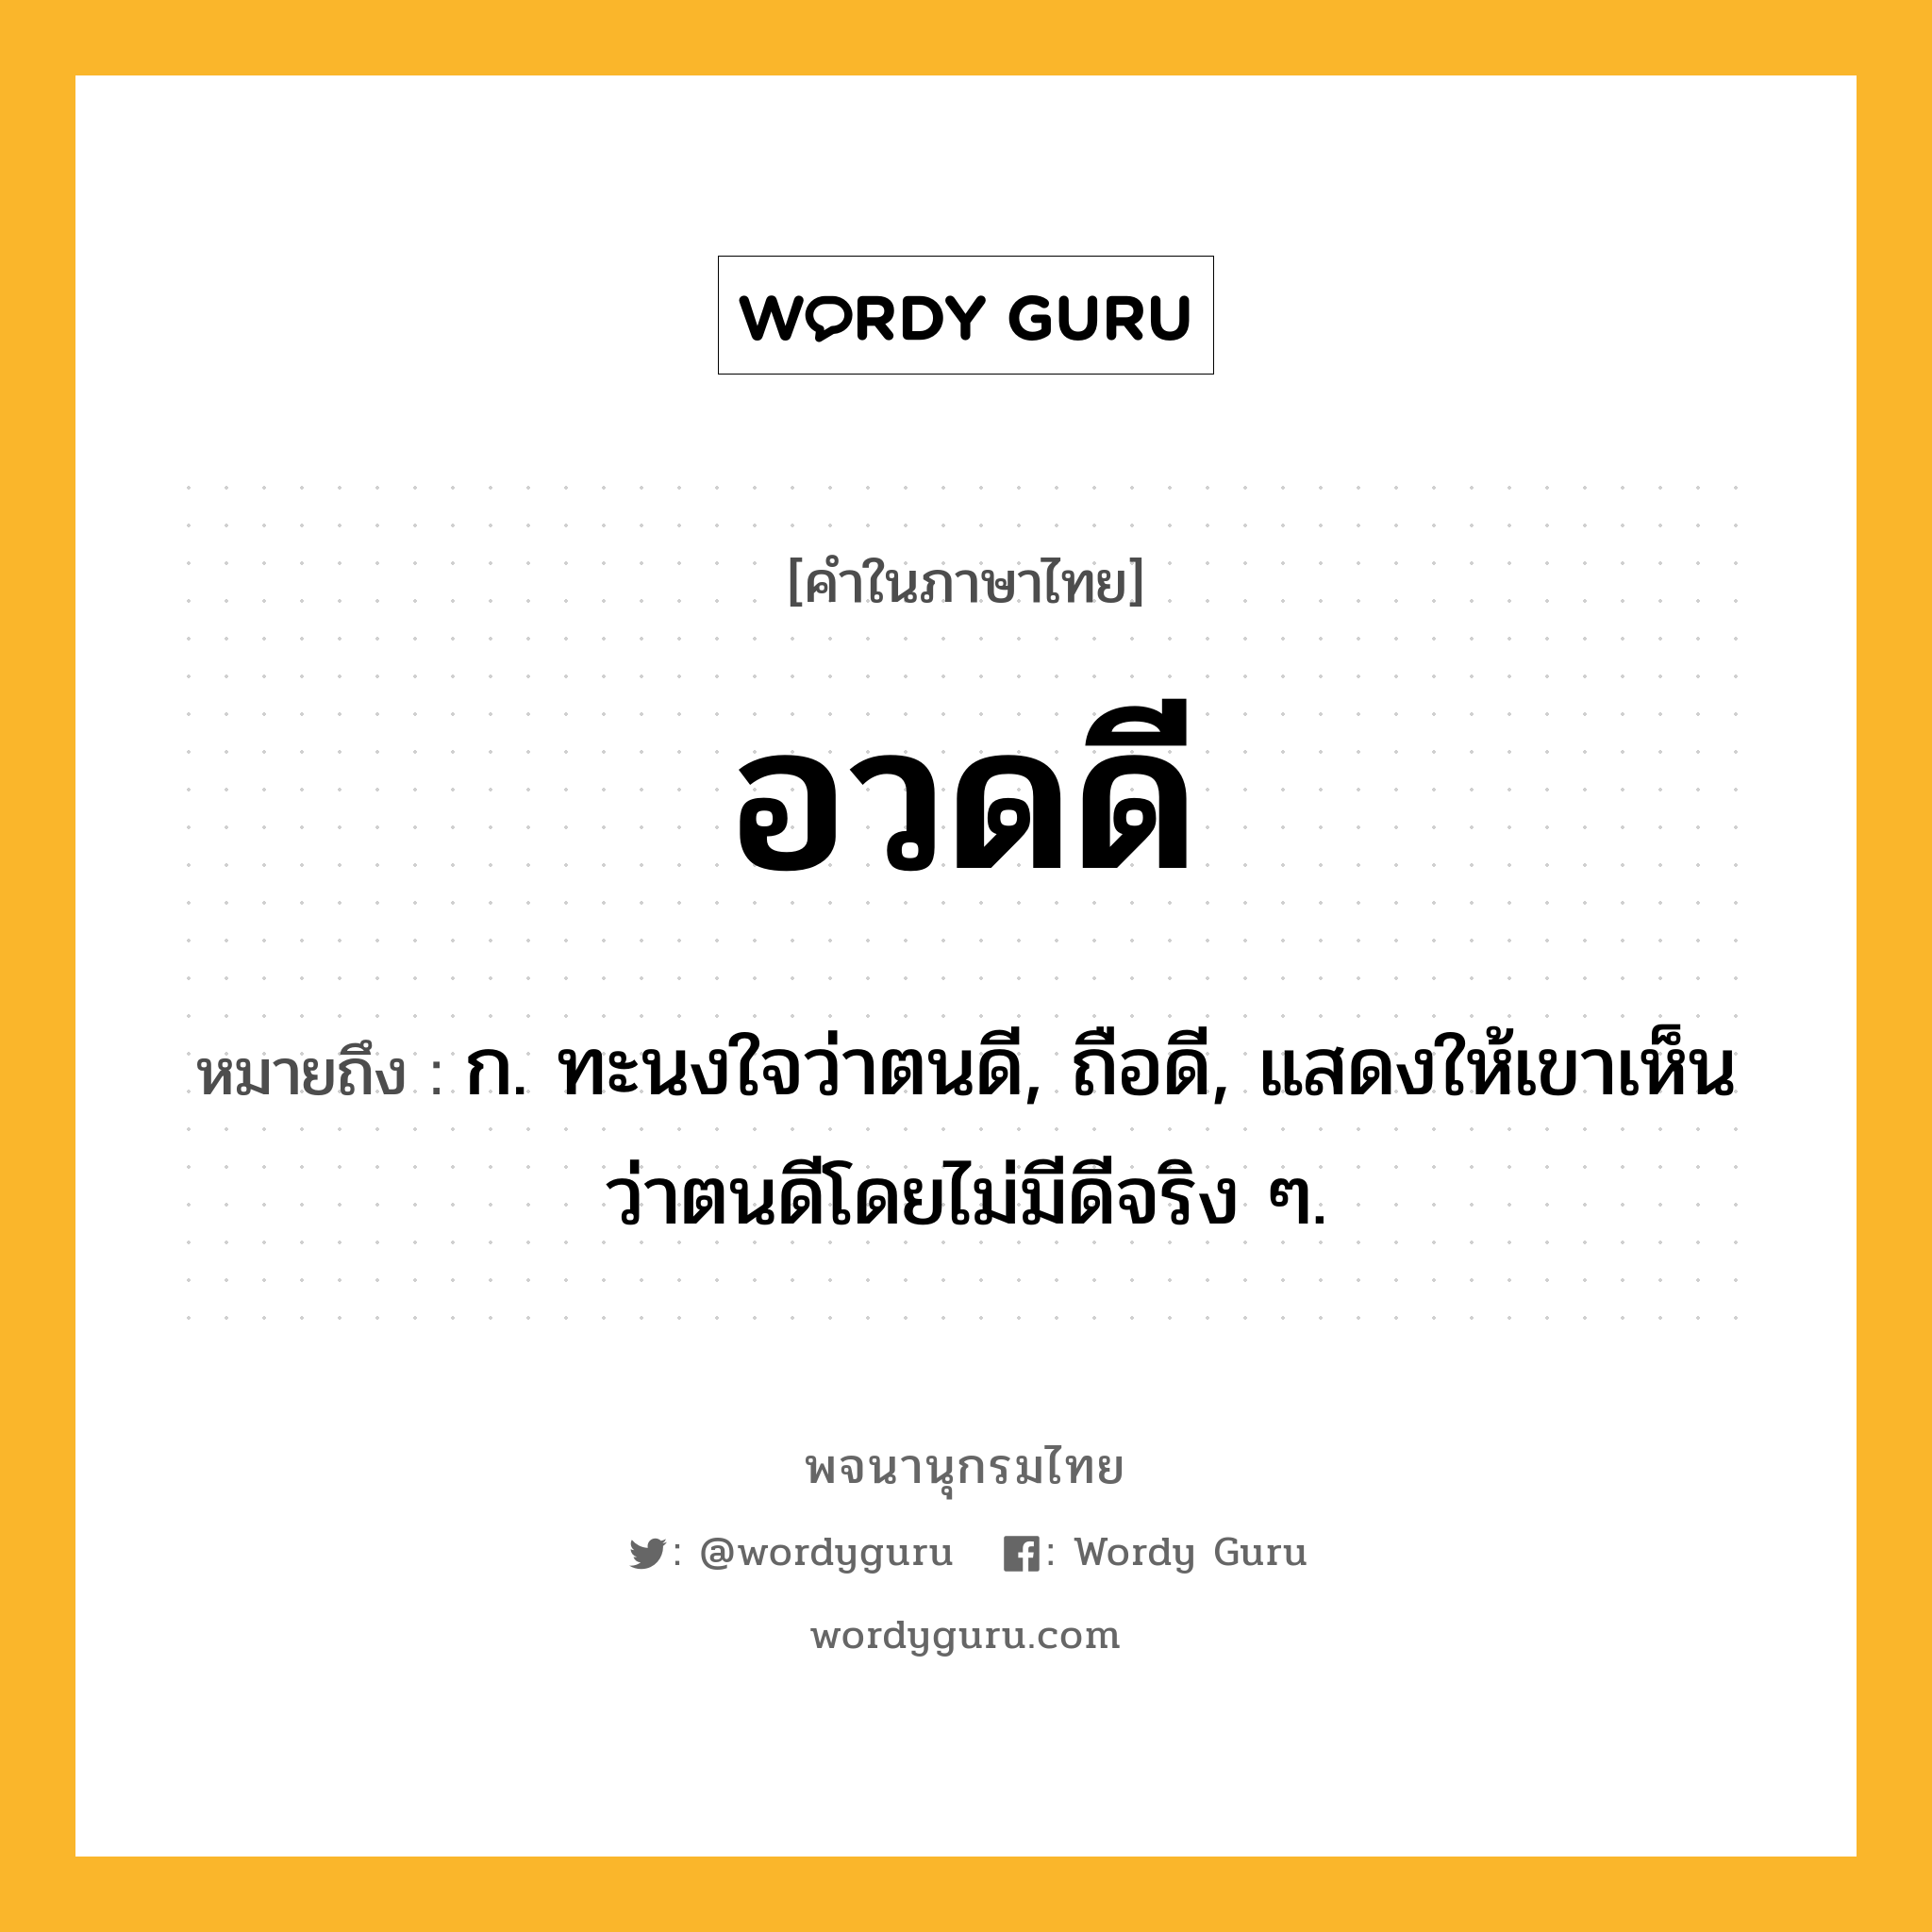 อวดดี ความหมาย หมายถึงอะไร?, คำในภาษาไทย อวดดี หมายถึง ก. ทะนงใจว่าตนดี, ถือดี, แสดงให้เขาเห็นว่าตนดีโดยไม่มีดีจริง ๆ.